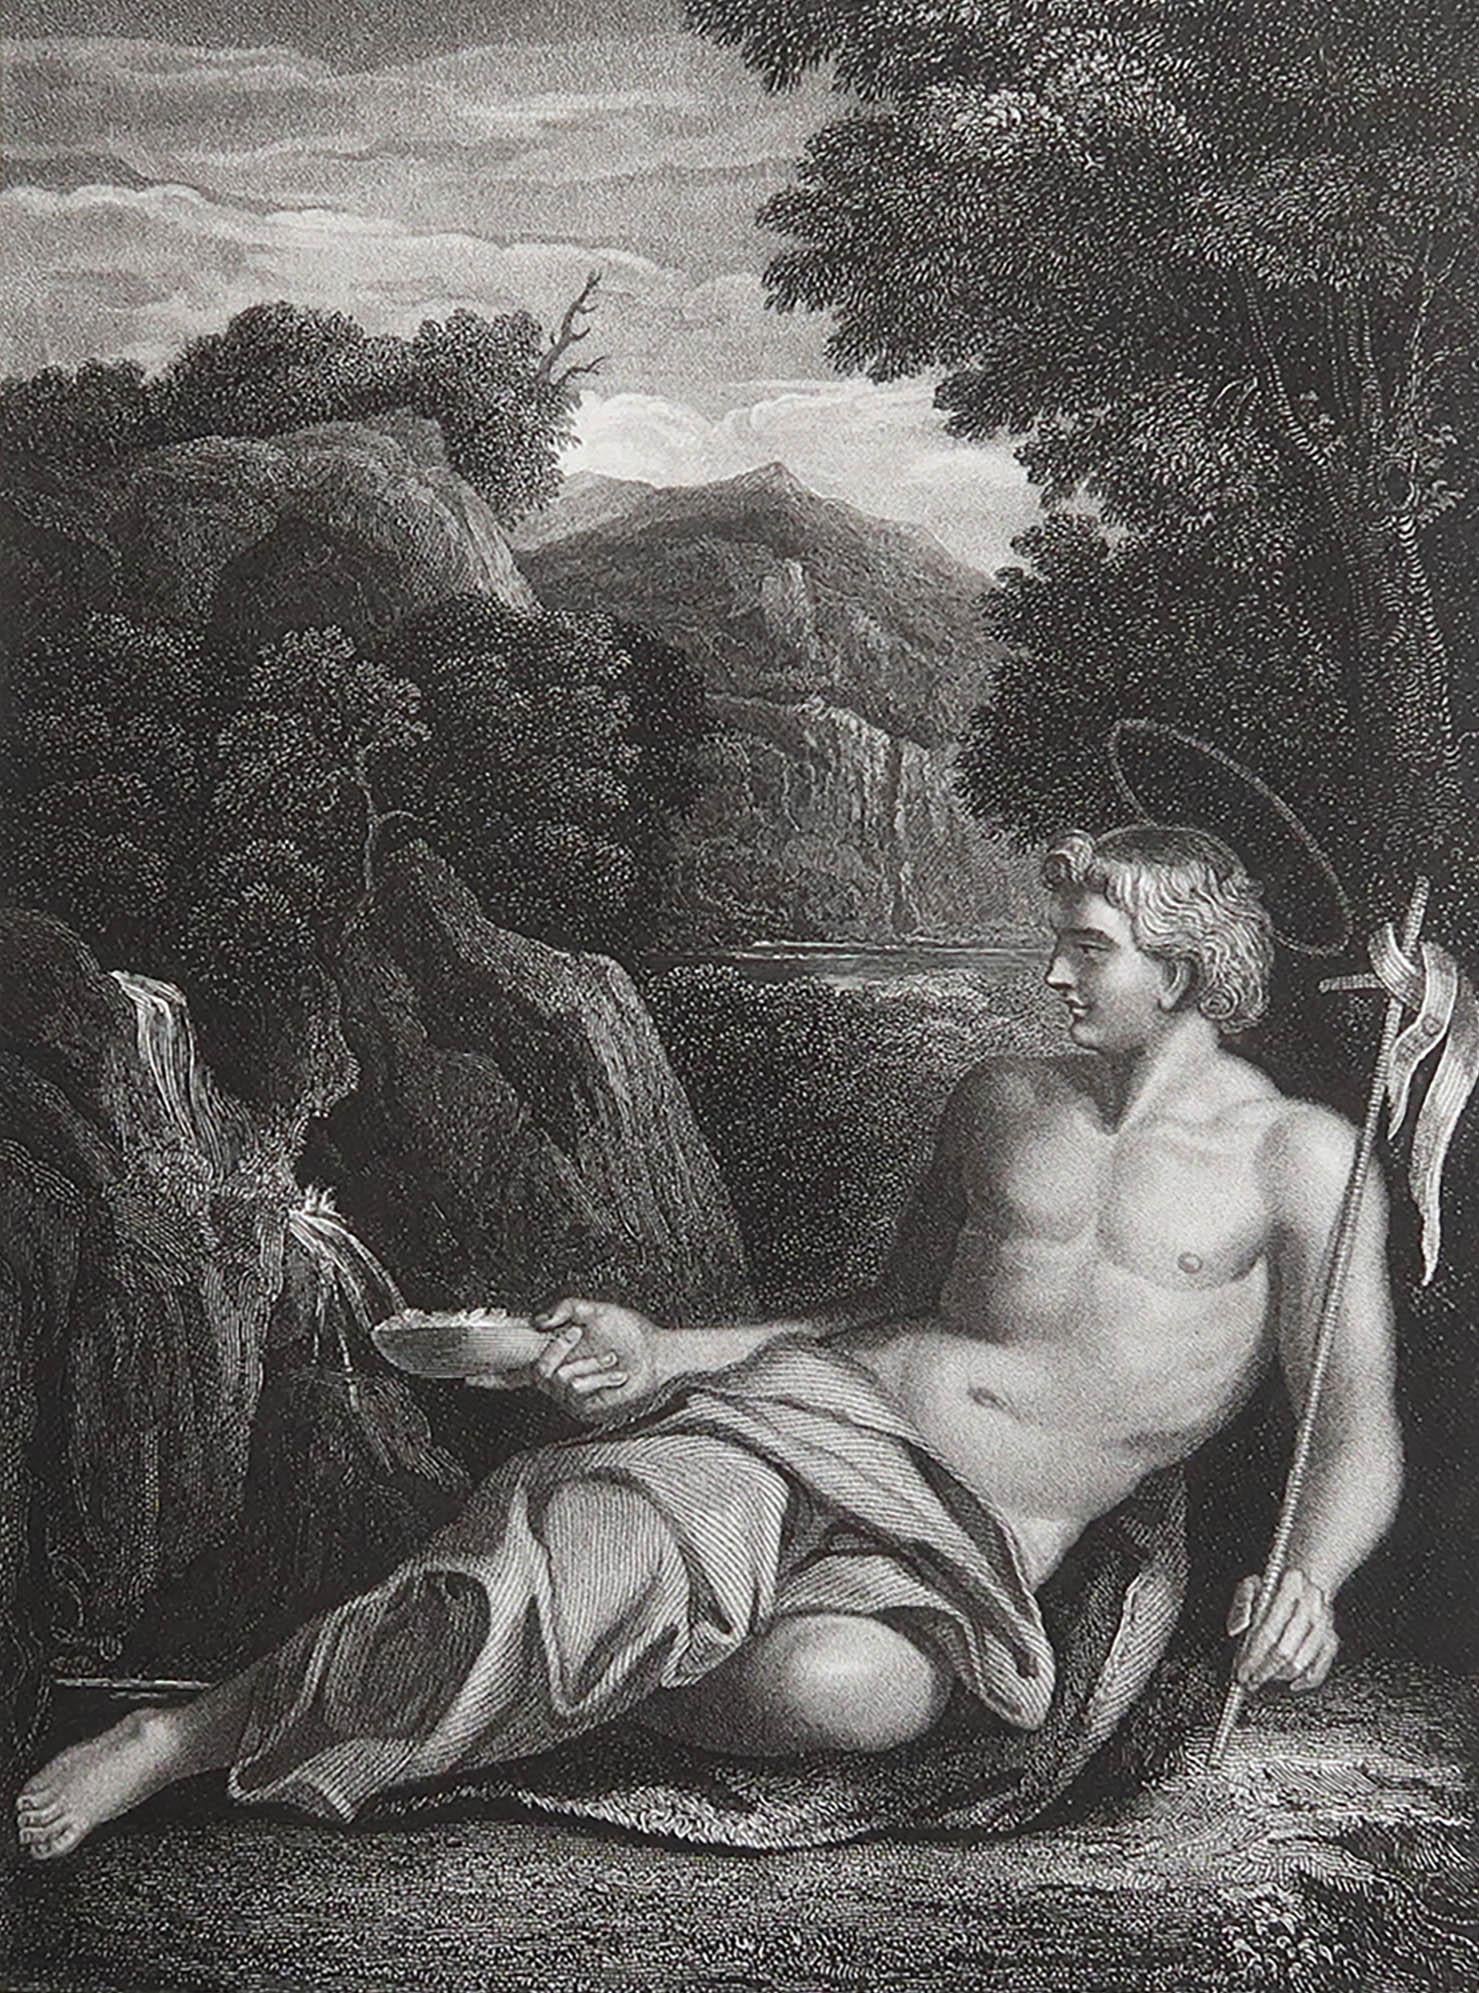 Wunderschönes Bild nach Carracci

Feiner Stahlstich. 

Herausgegeben von Jones & Co. C.1850

Ungerahmt.

